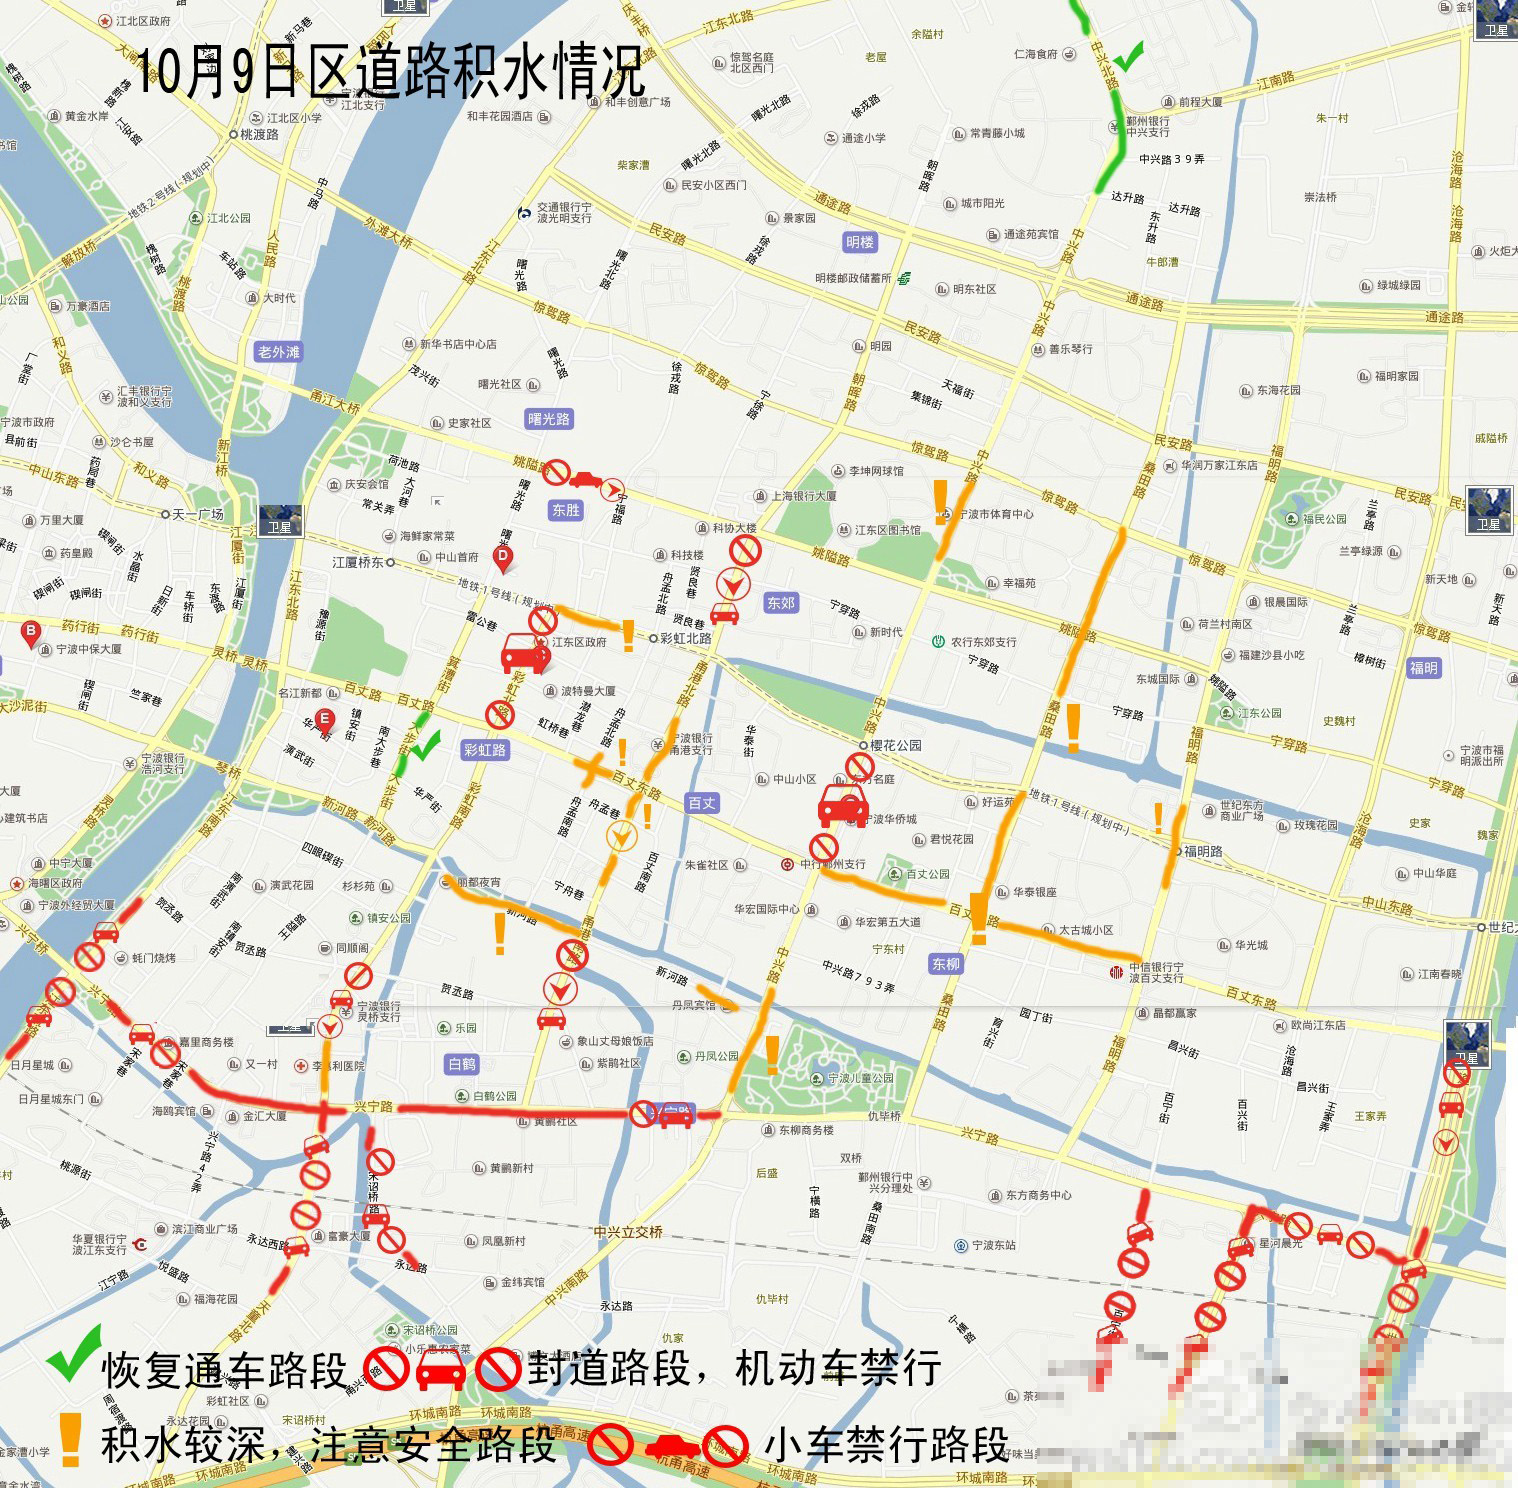 潍坊市区各道路地图